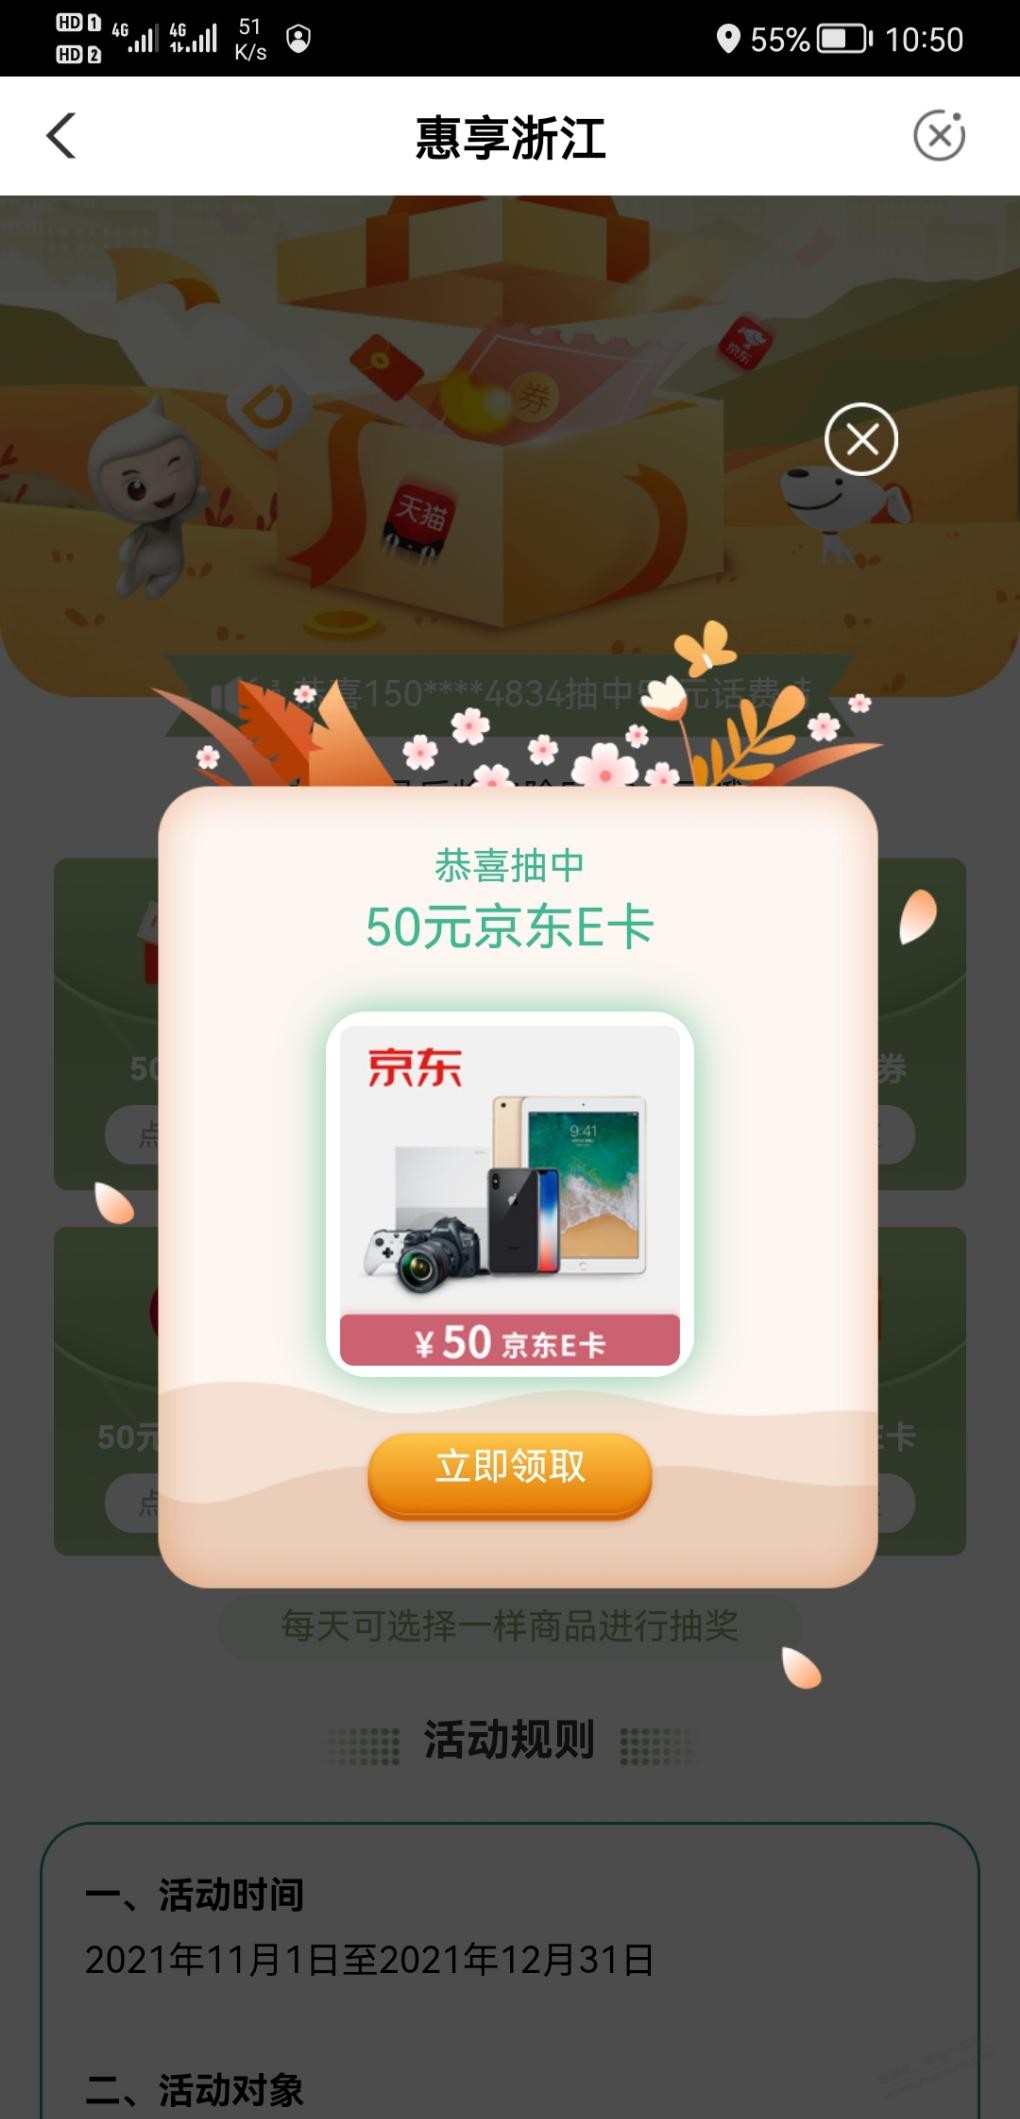 浙江农行有水-50e卡-惠小助(52huixz.com)